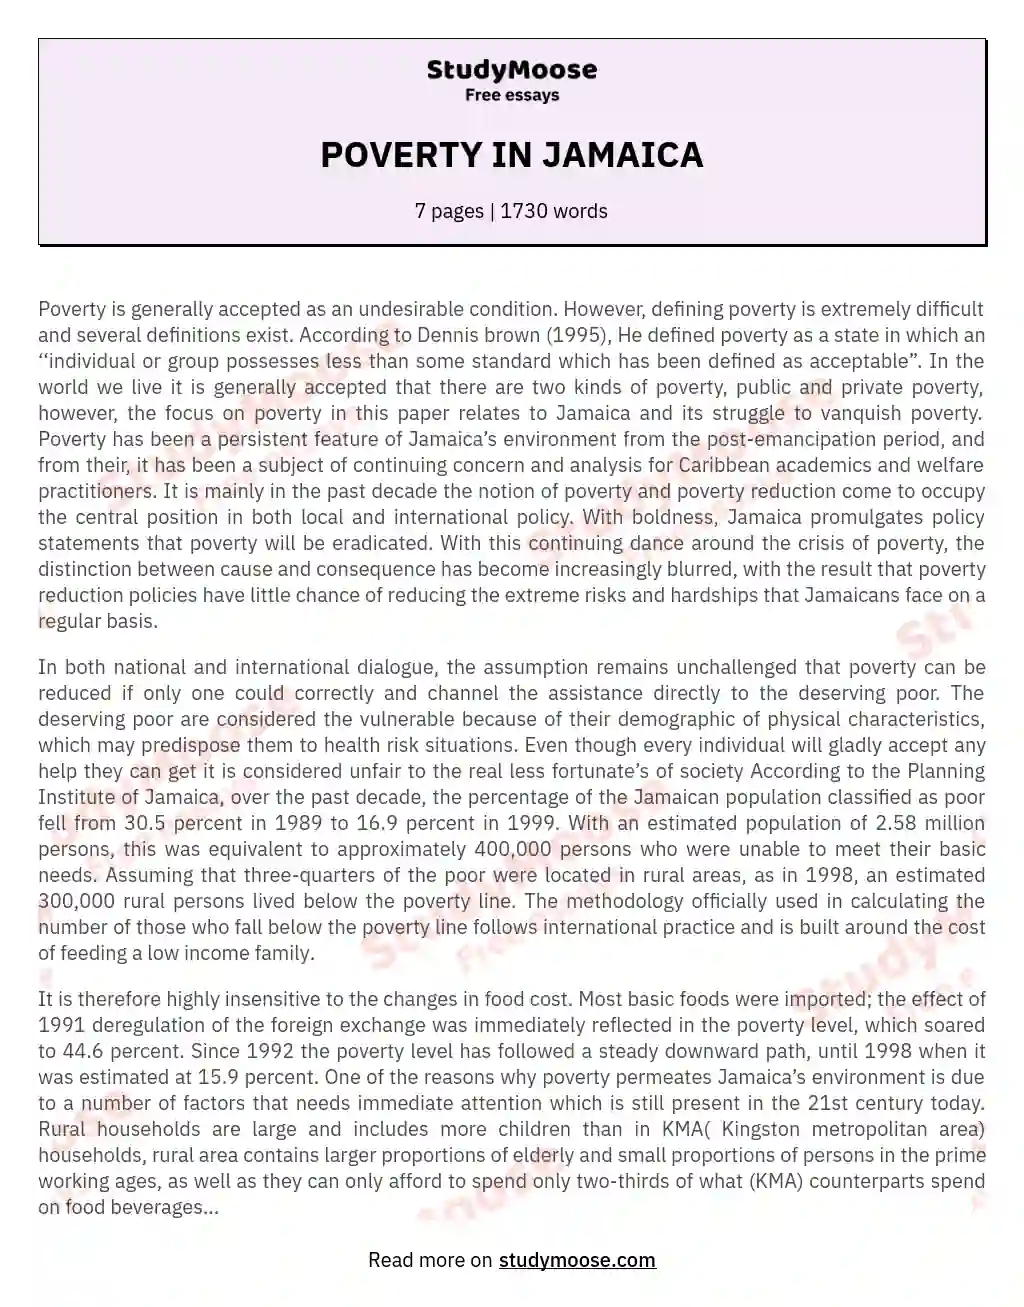 poverty in jamaica essay